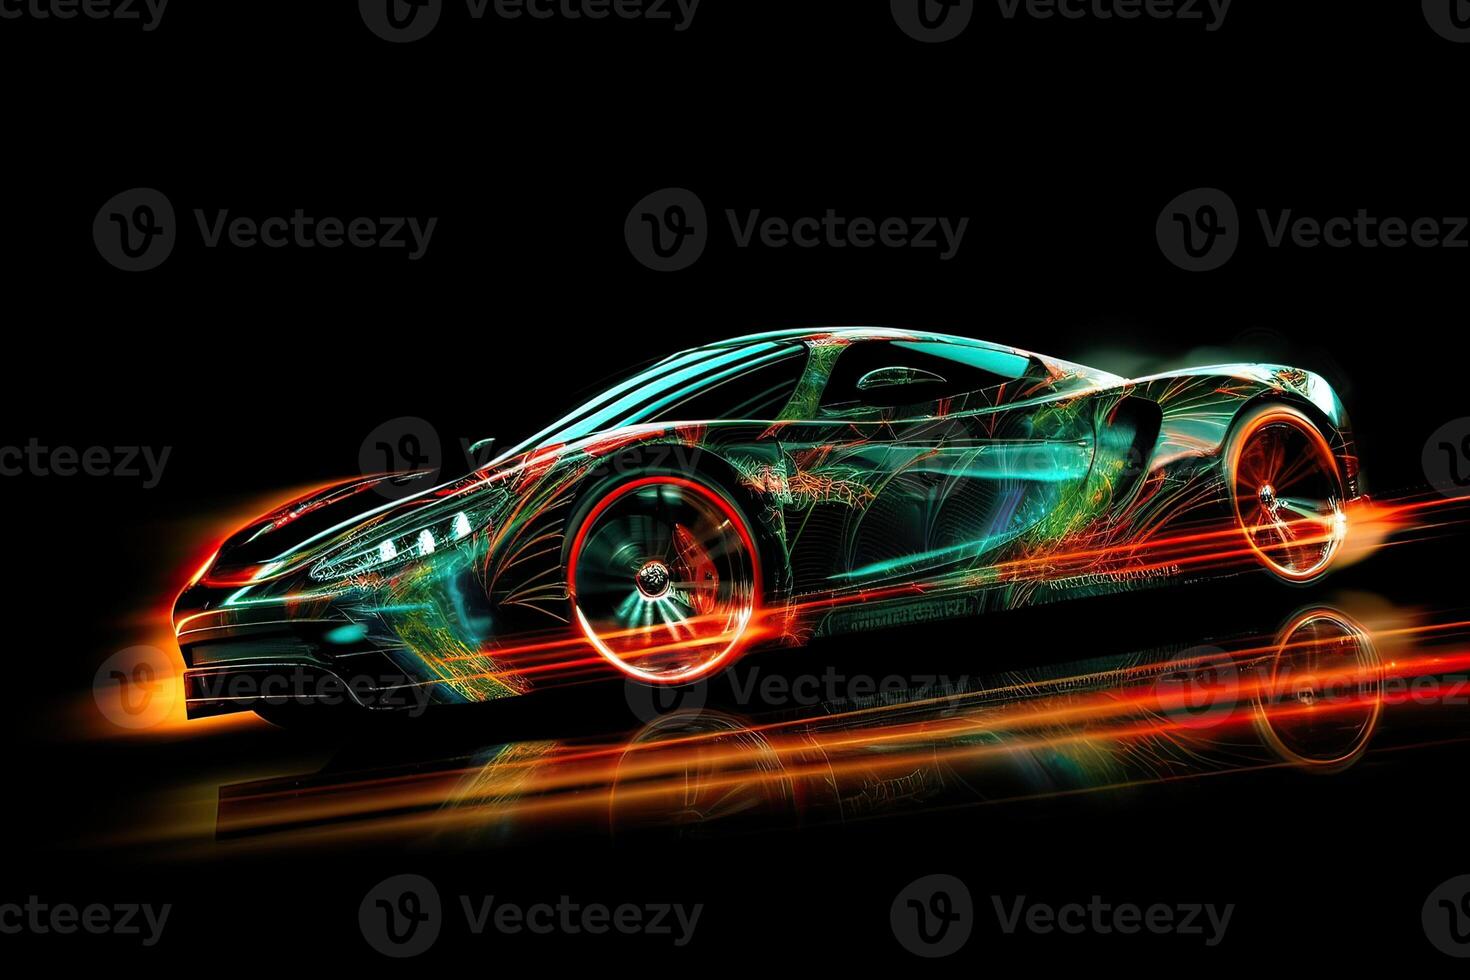 futuristisch Sport Auto mit Neon- Beleuchtung auf ein Neon